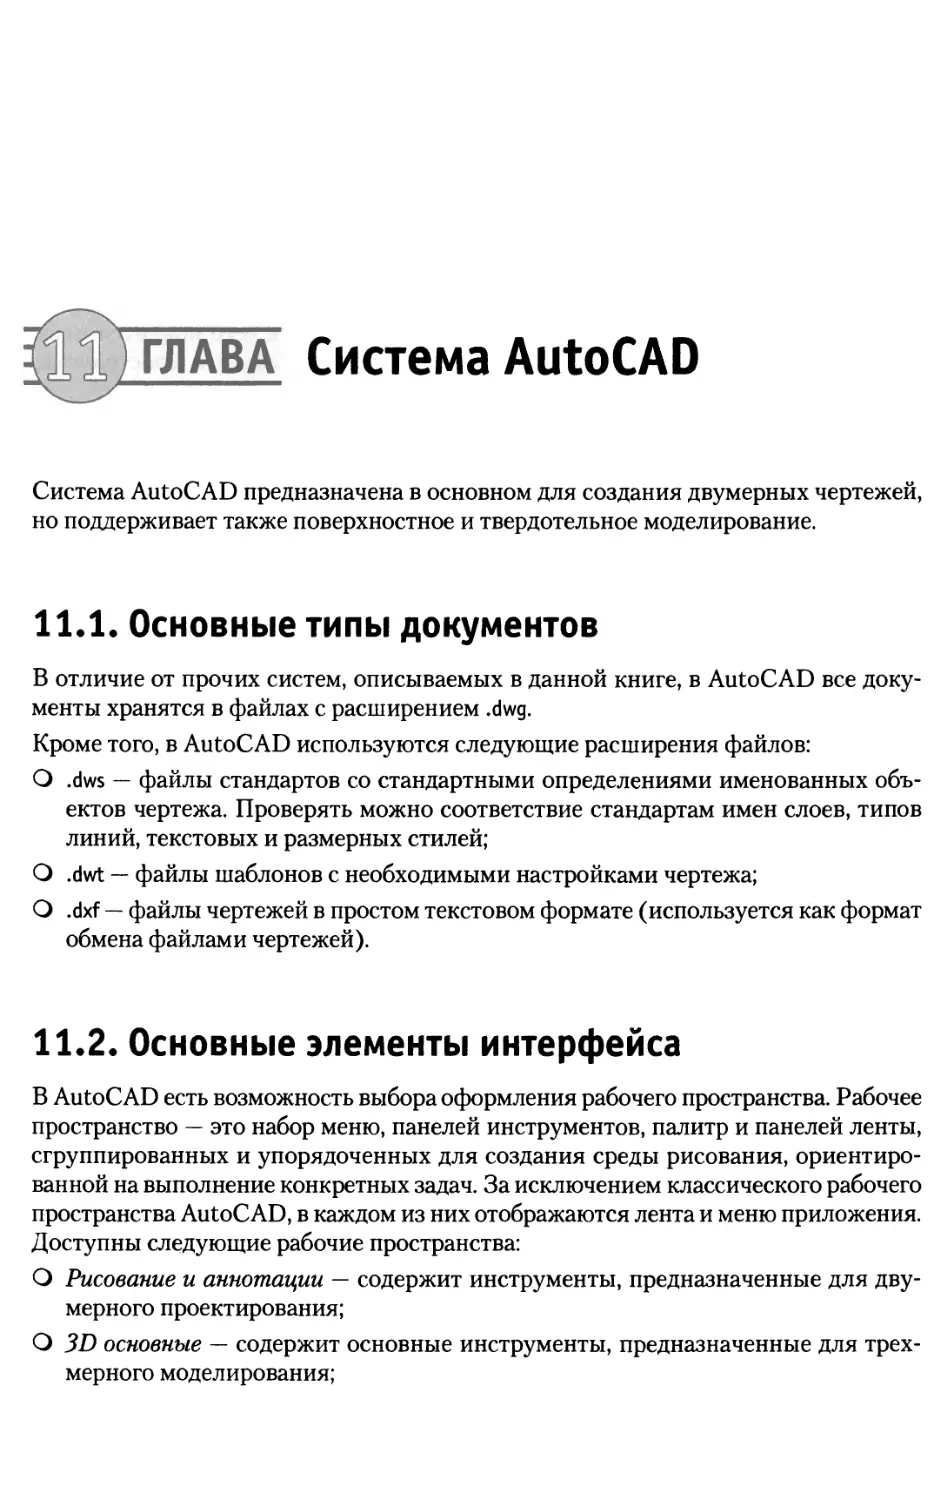 Глава 11. Система AutoCAD
11.2. Основные элементы интерфейса